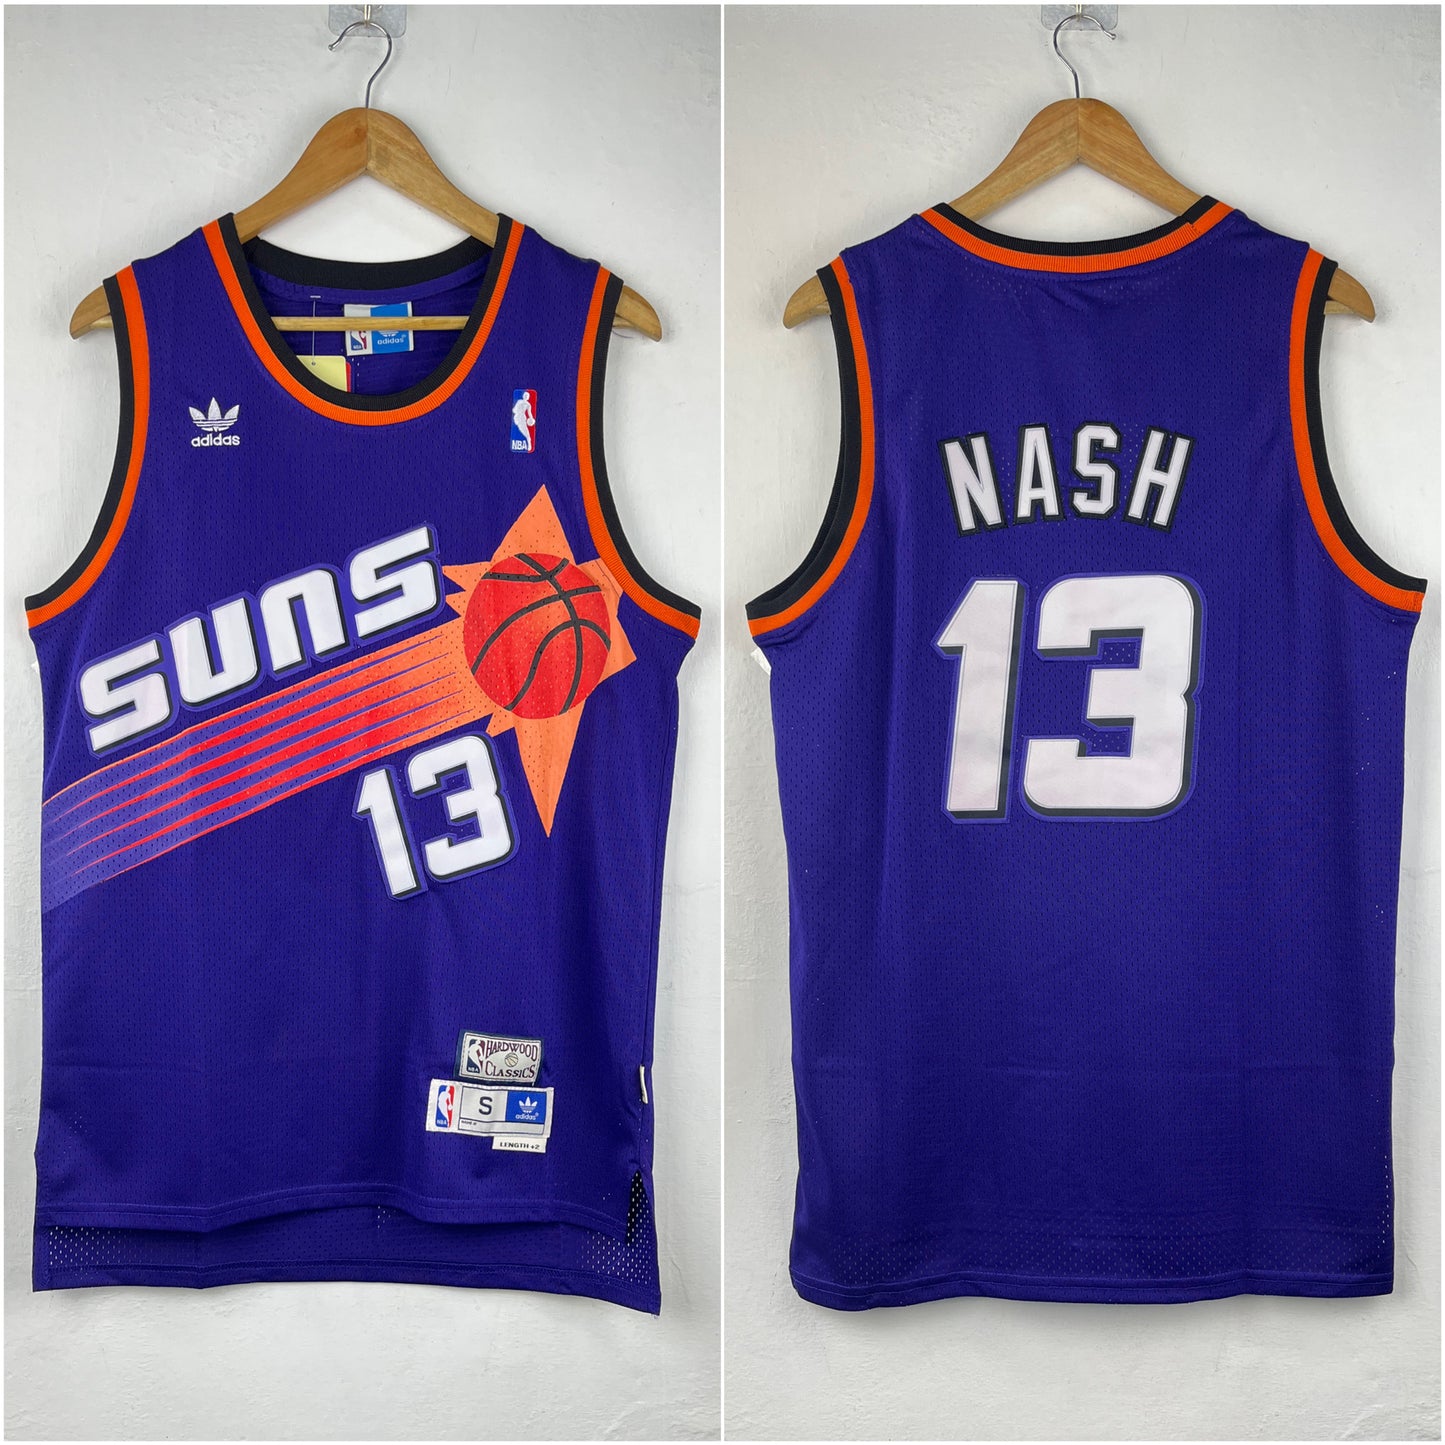 NASH 13 Purple Phoenix Suns NBA Jersey